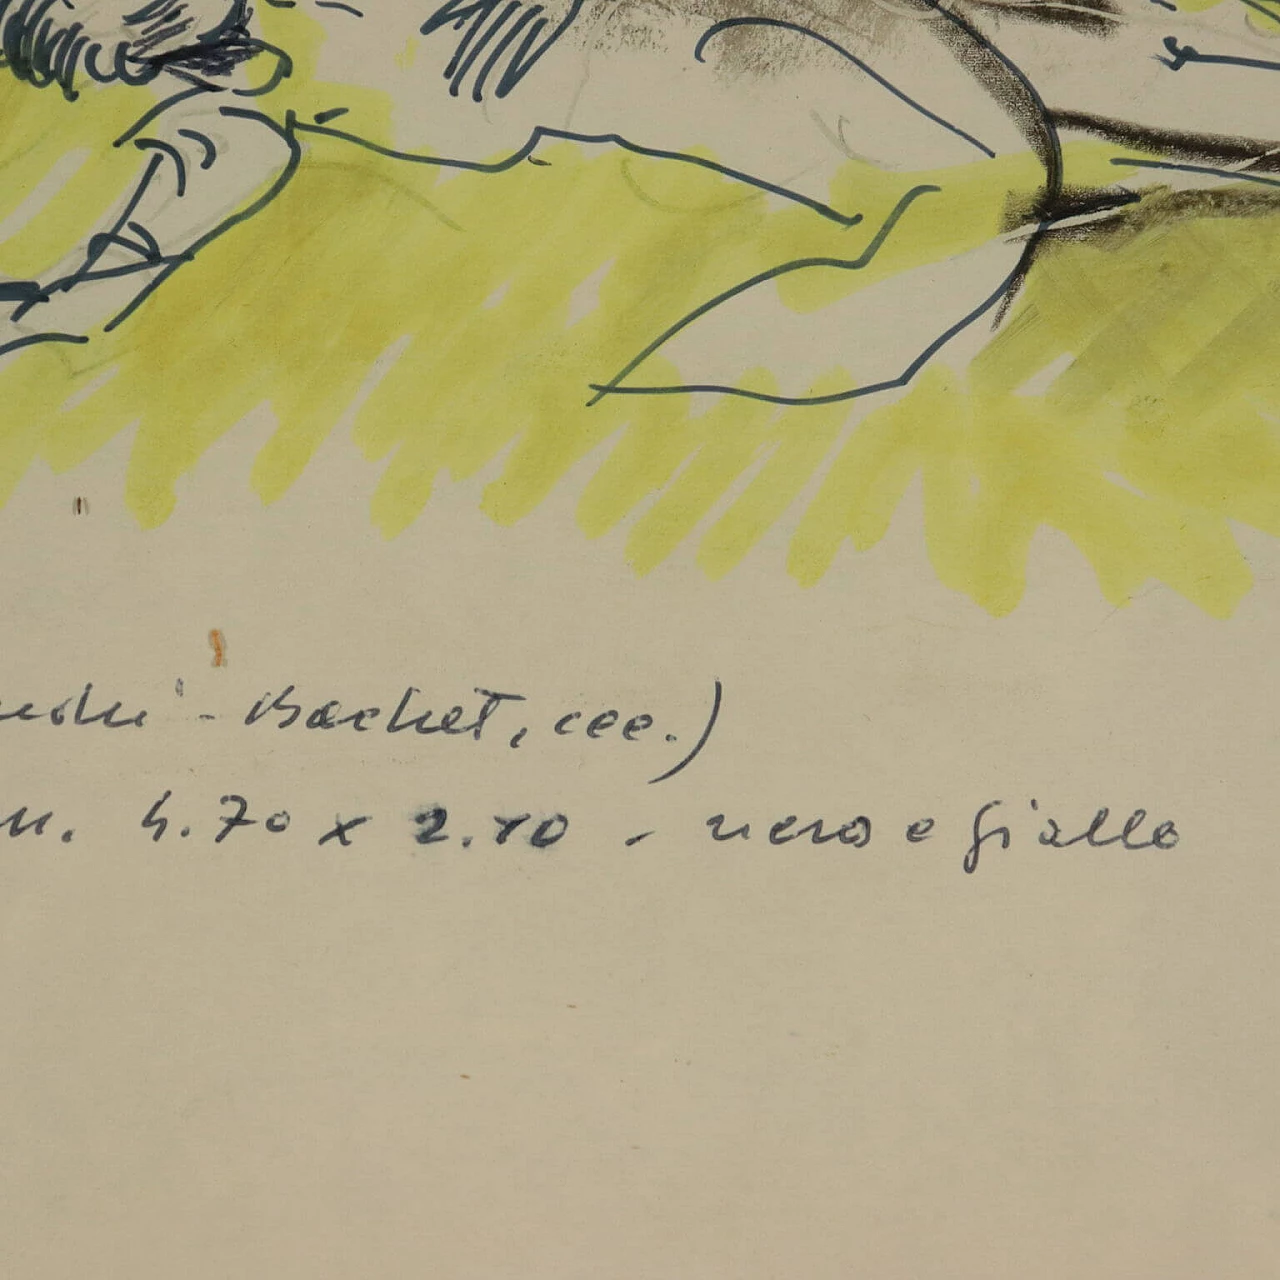 Remo Brindisi, Olocausto, disegno a tecnica mista su carta, 1989 8